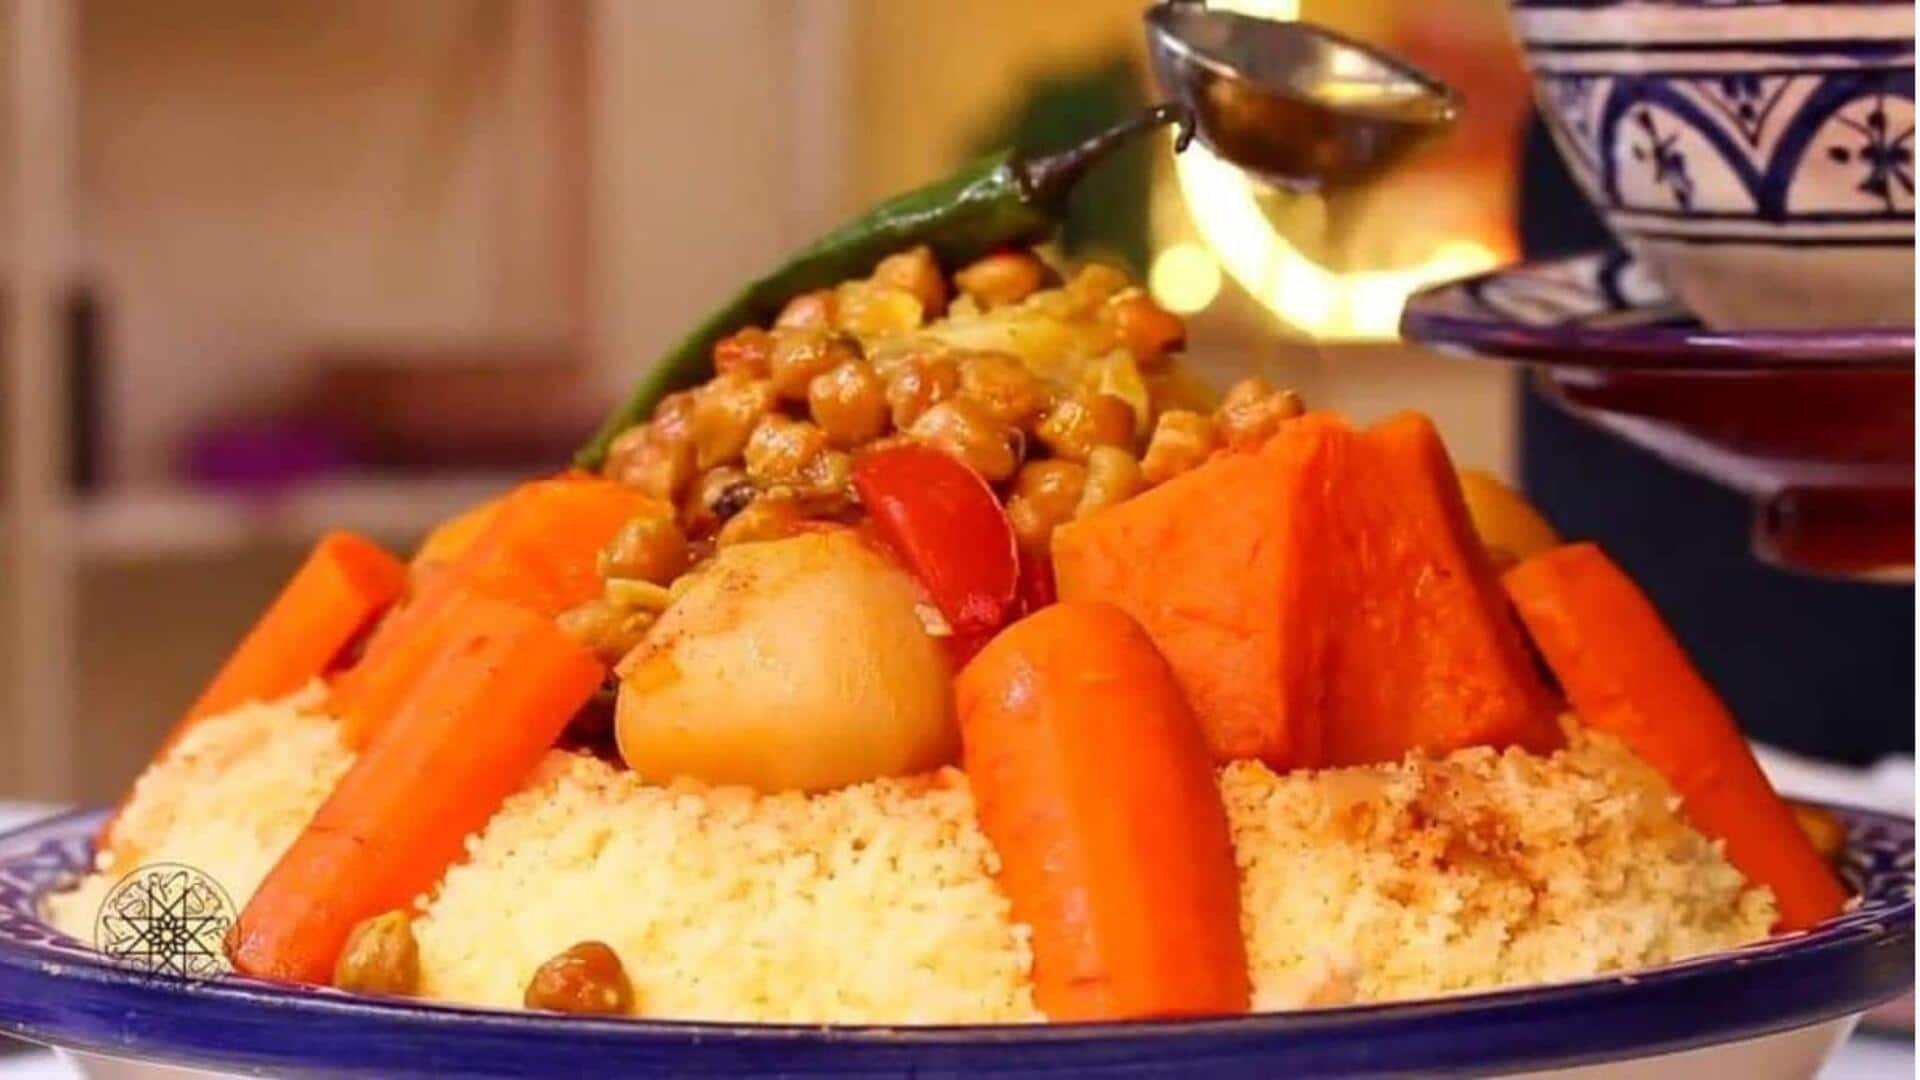 Saatnya berbagi resep! Siapkan couscous labu Maroko ini di rumah